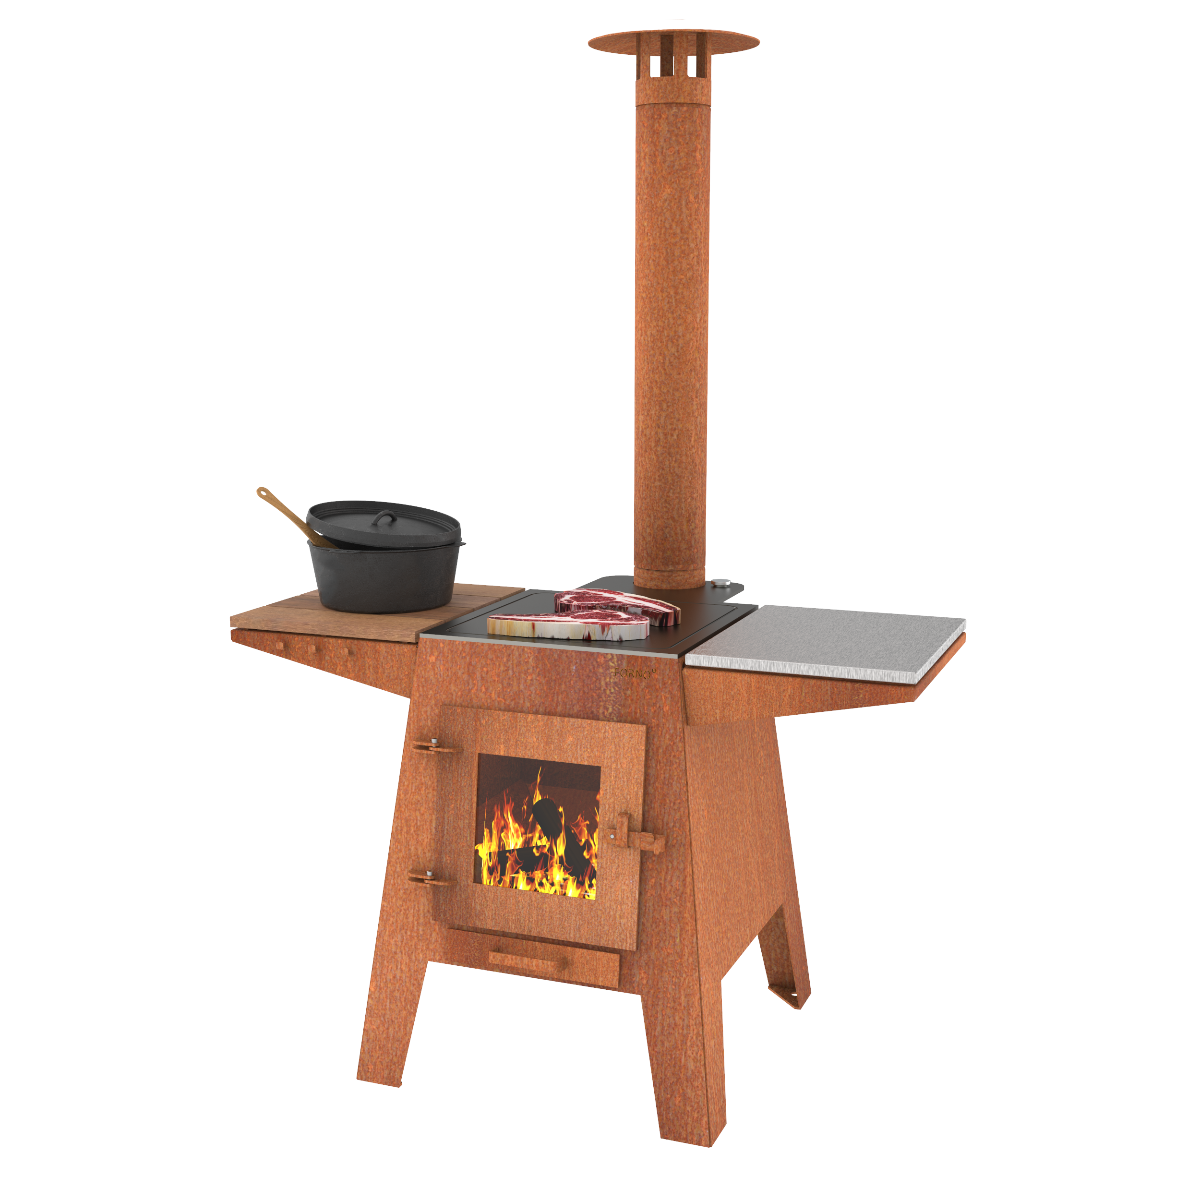 Parker-and-Coop-corten-steel-outdoor-cooking-oven-bbq-grill-rust-3